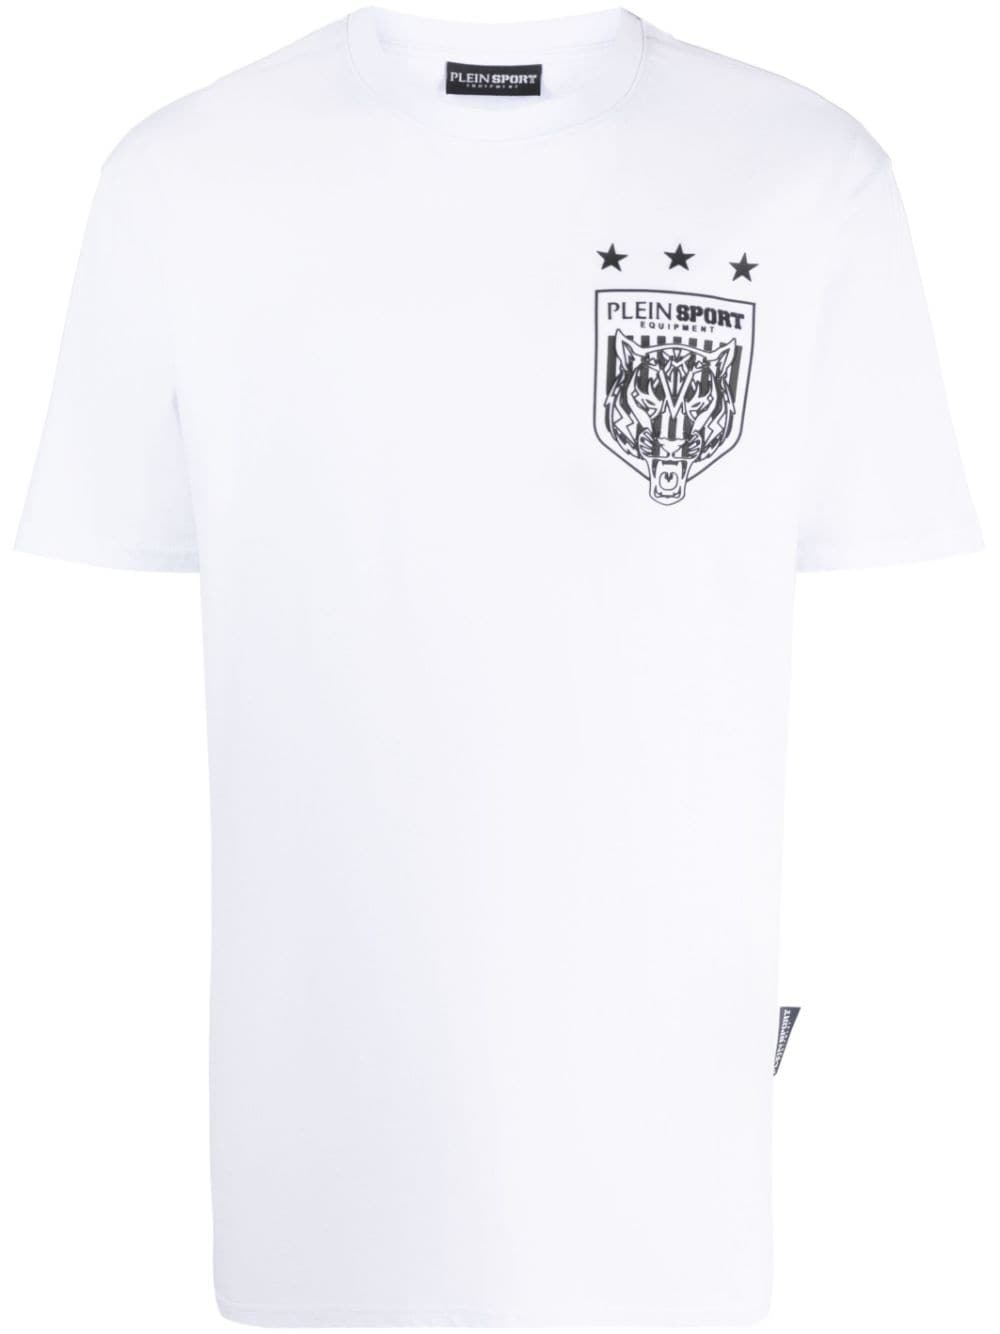 Plein Sport Tiger Crest Edition T-shirt - White von Plein Sport